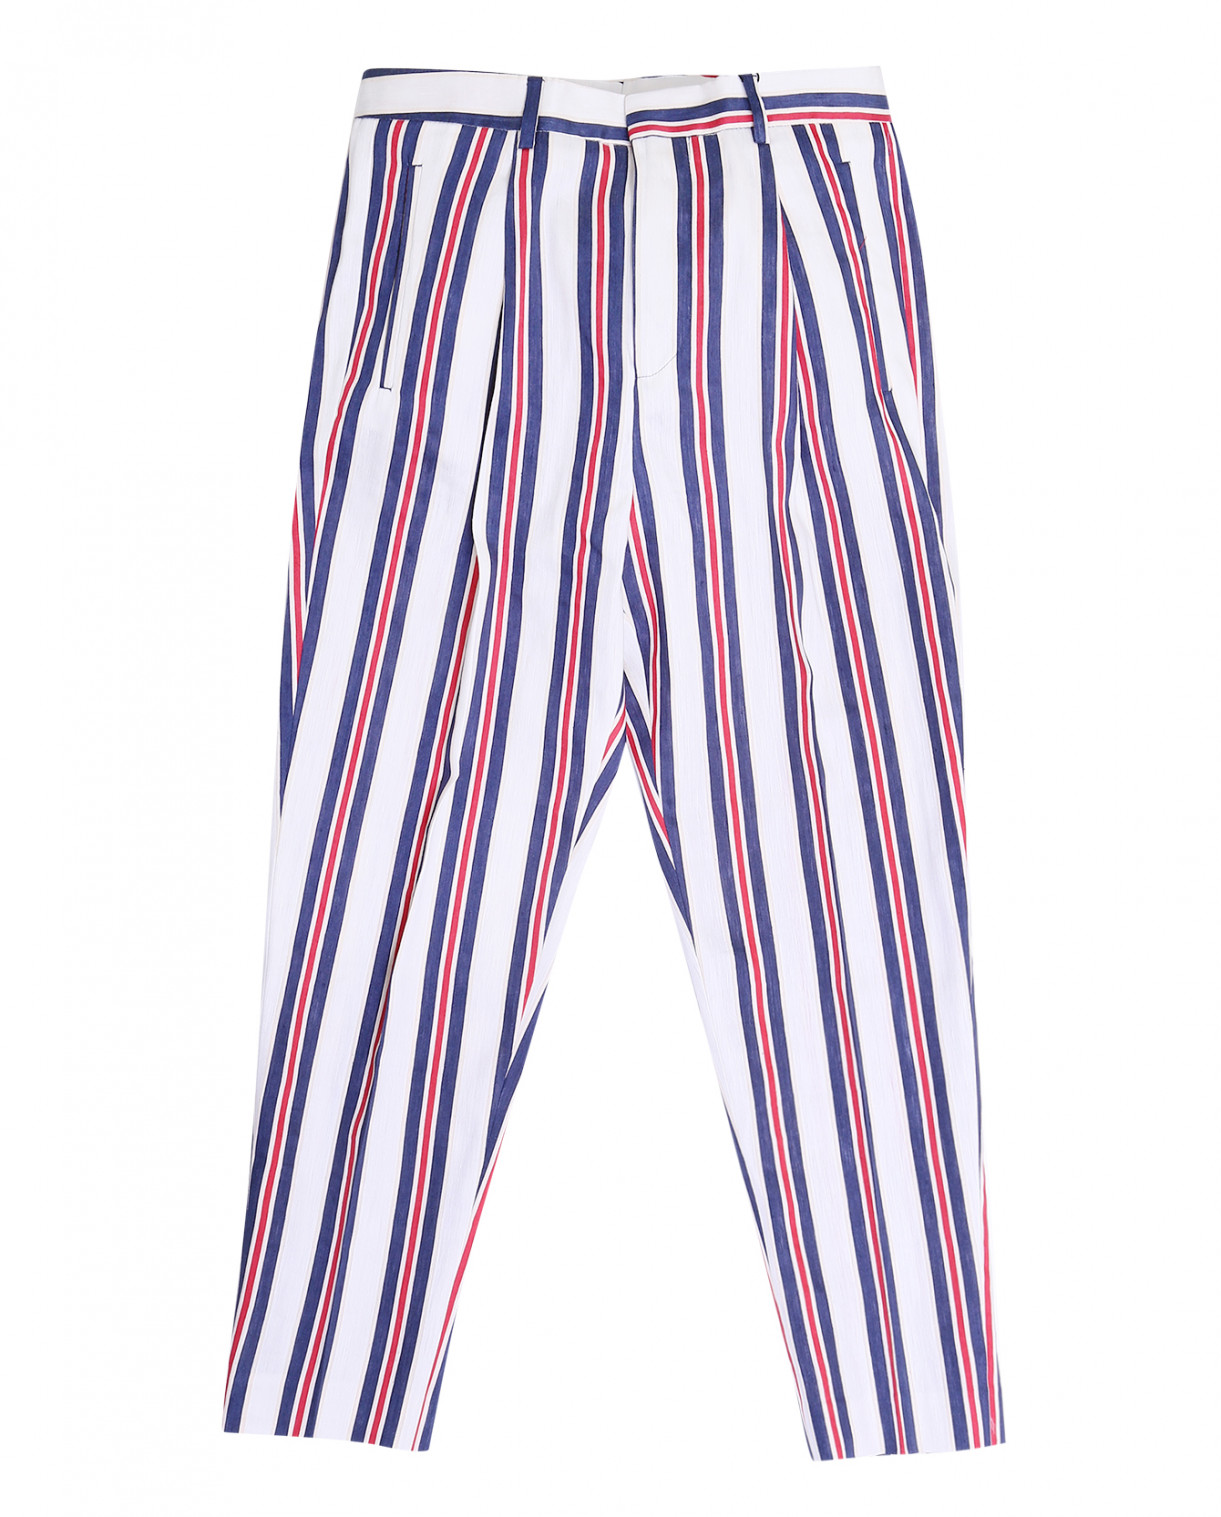 Полосатые брюки из льна и хлопка Chloé Stora  –  Общий вид  – Цвет:  Узор